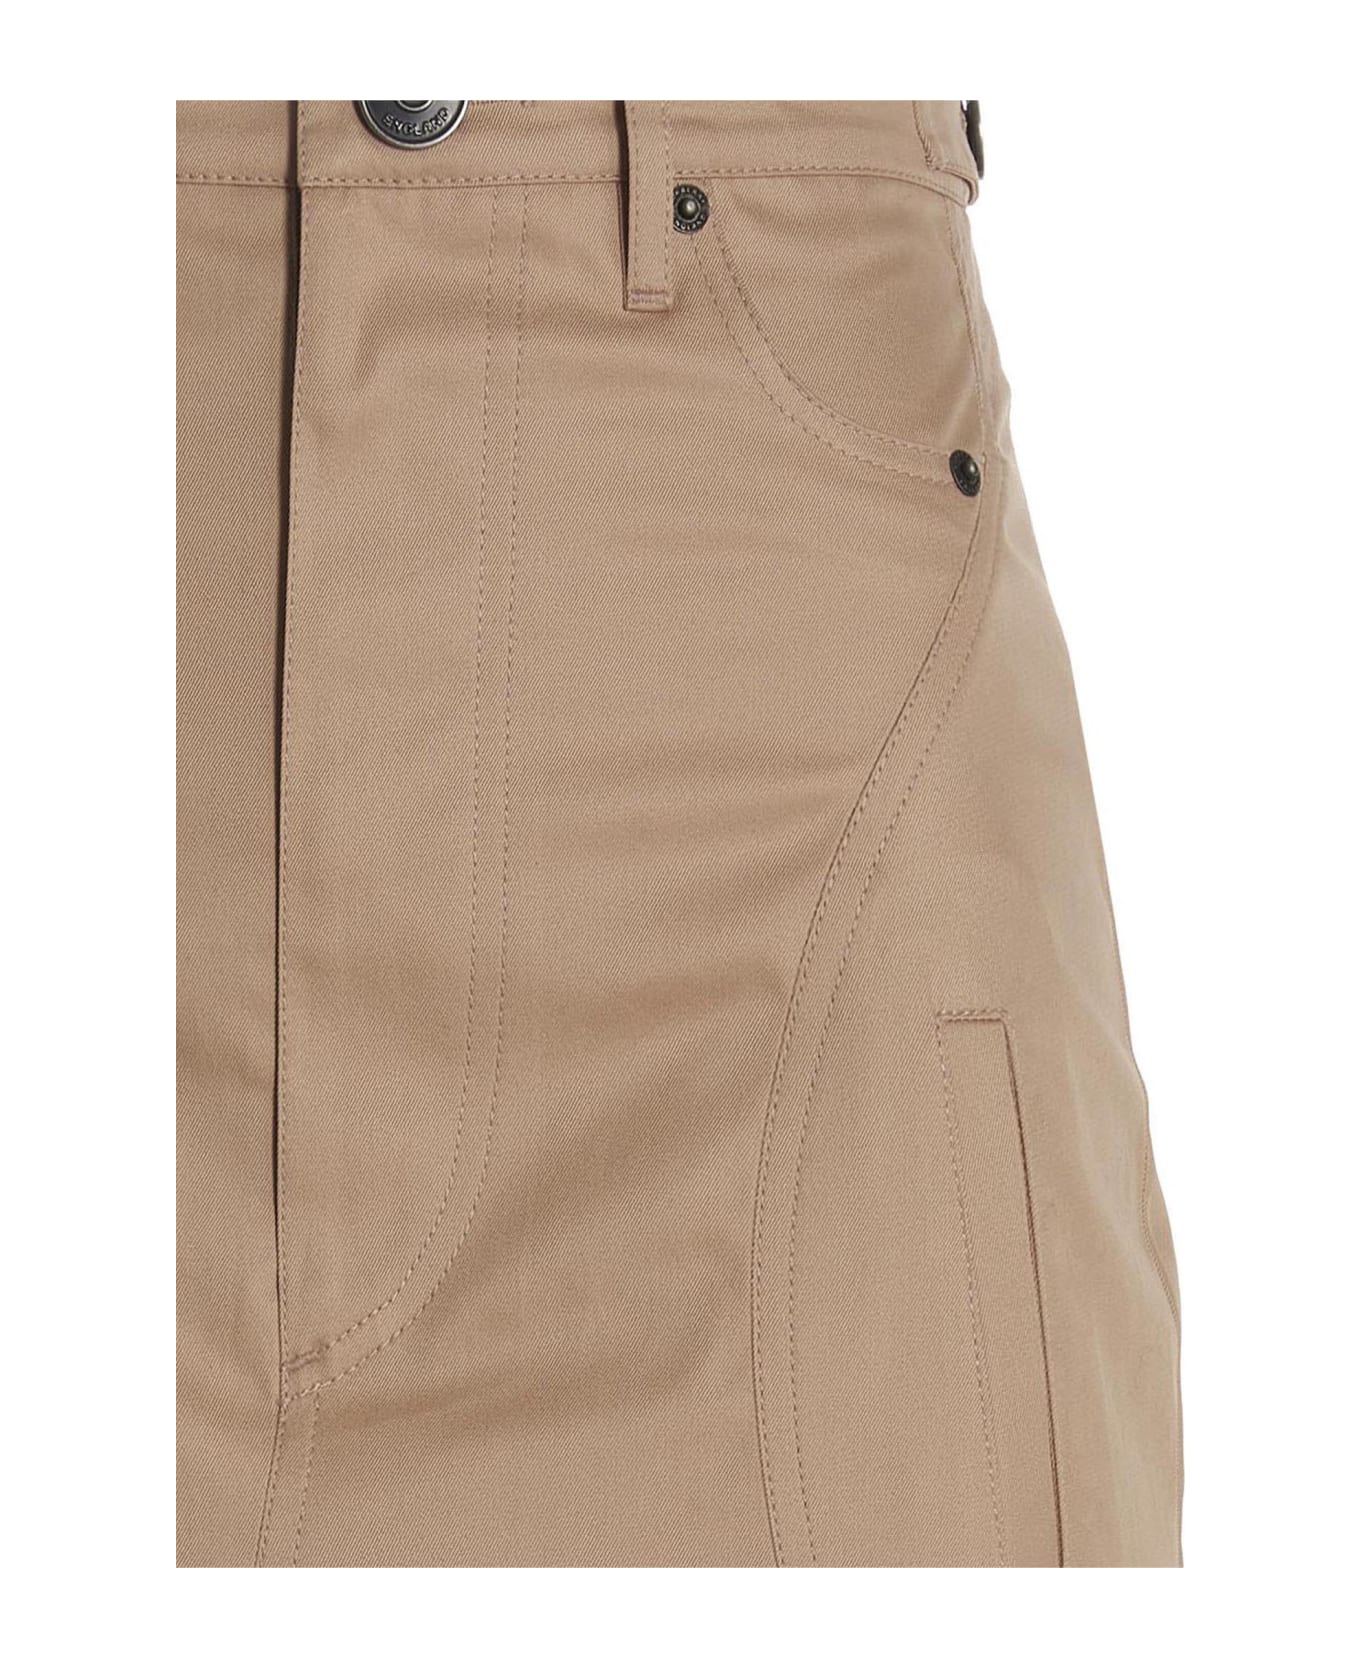 Burberry Maxi Skirt - Beige スカート